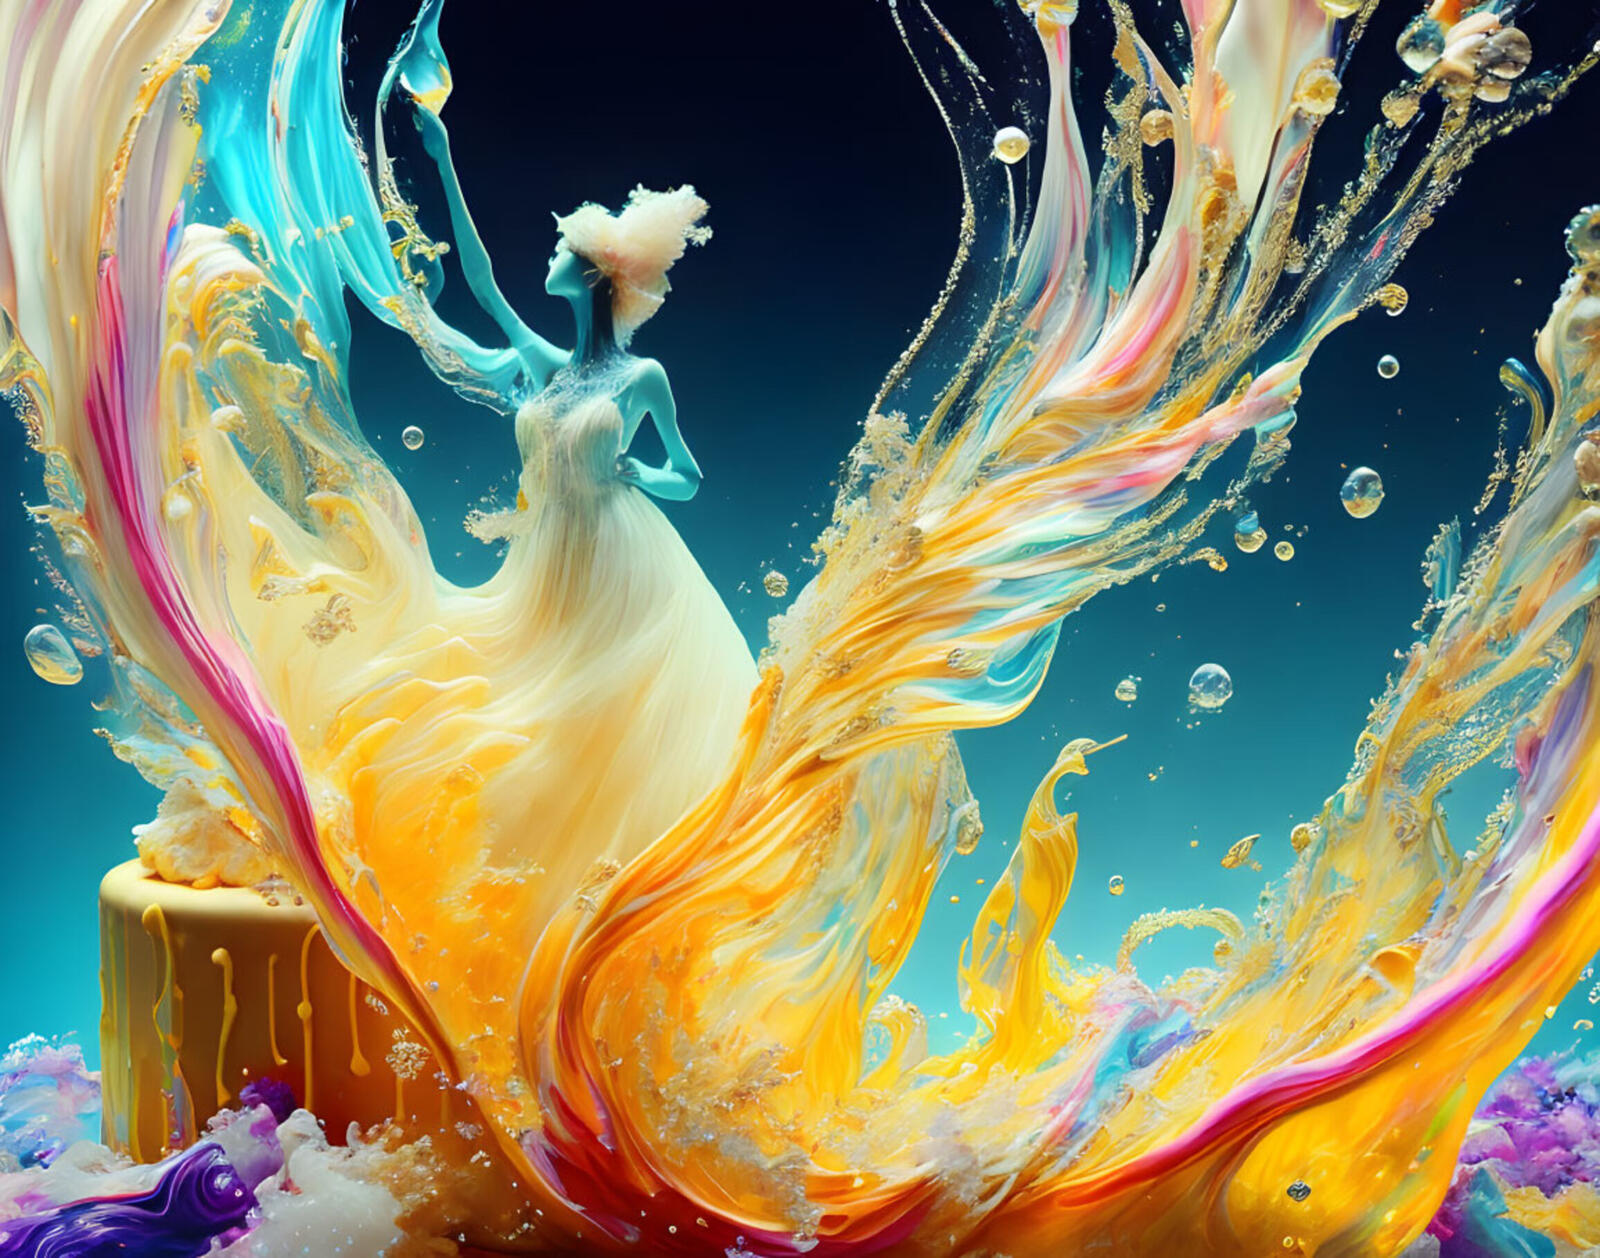 Бесплатное фото Девушка балерина из всплеска цветной воды